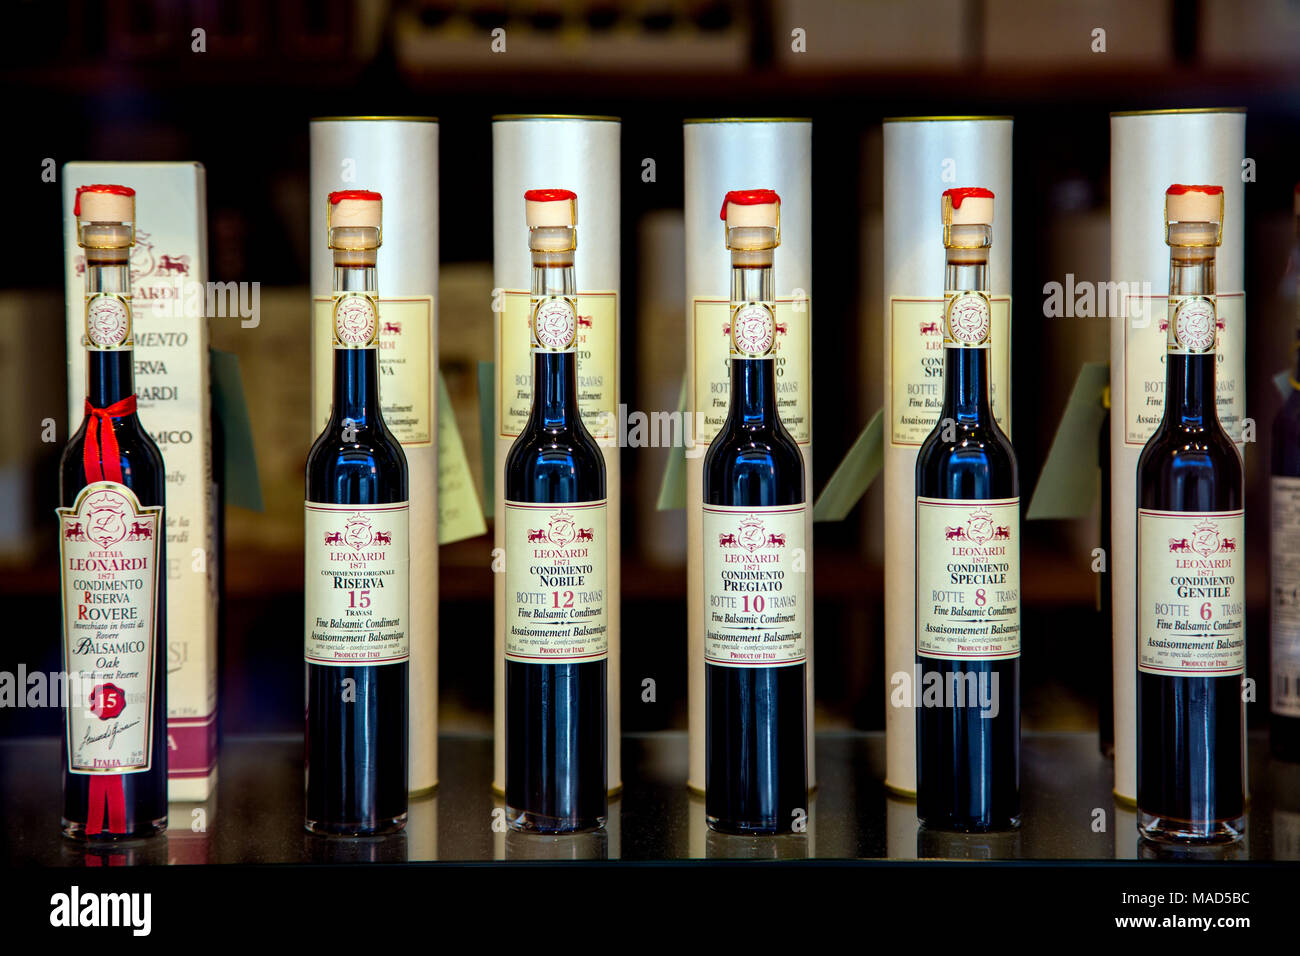 Balsamic vinegar displayed in Modena Italy Stock Photo